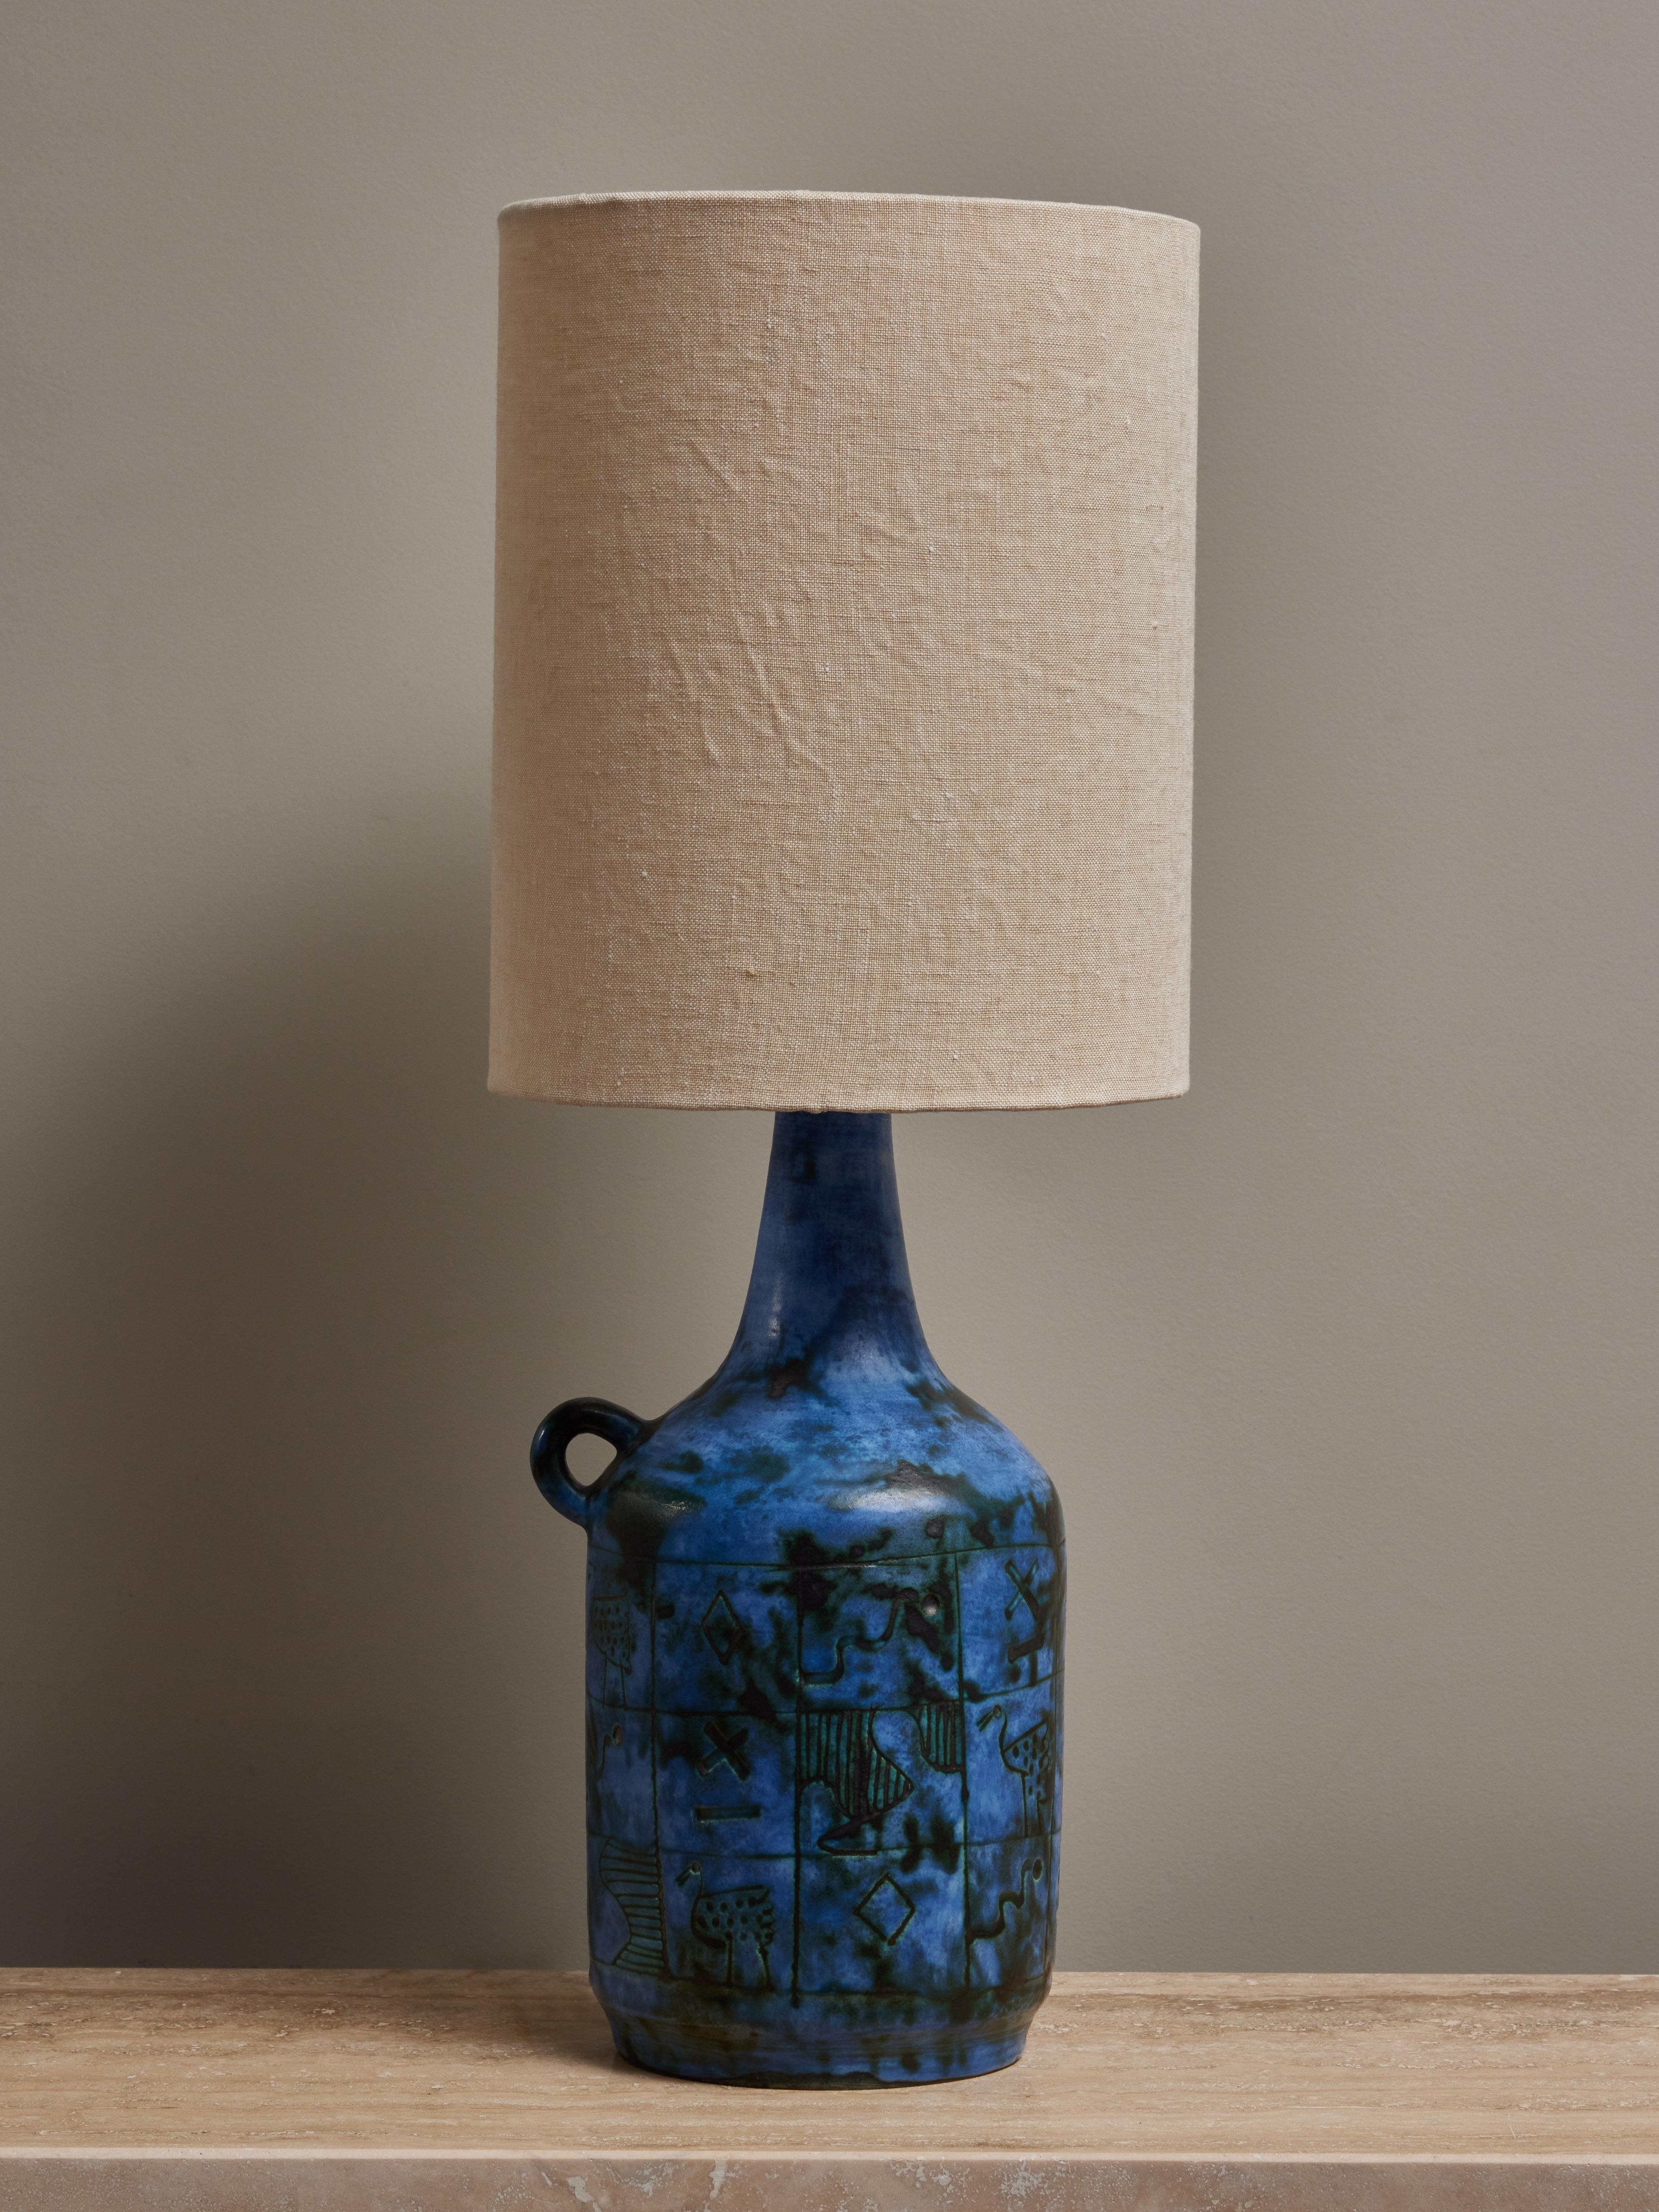 Lampe à poser en céramique bleue de Jacques Blin, en forme de bouteille, avec des animaux stylisés gravés et des motifs géométriques.

Signé en bas, nouvel abat-jour.

 

Jacques Blin (1920-1995) Jacques Blin est un célèbre céramiste français qui a